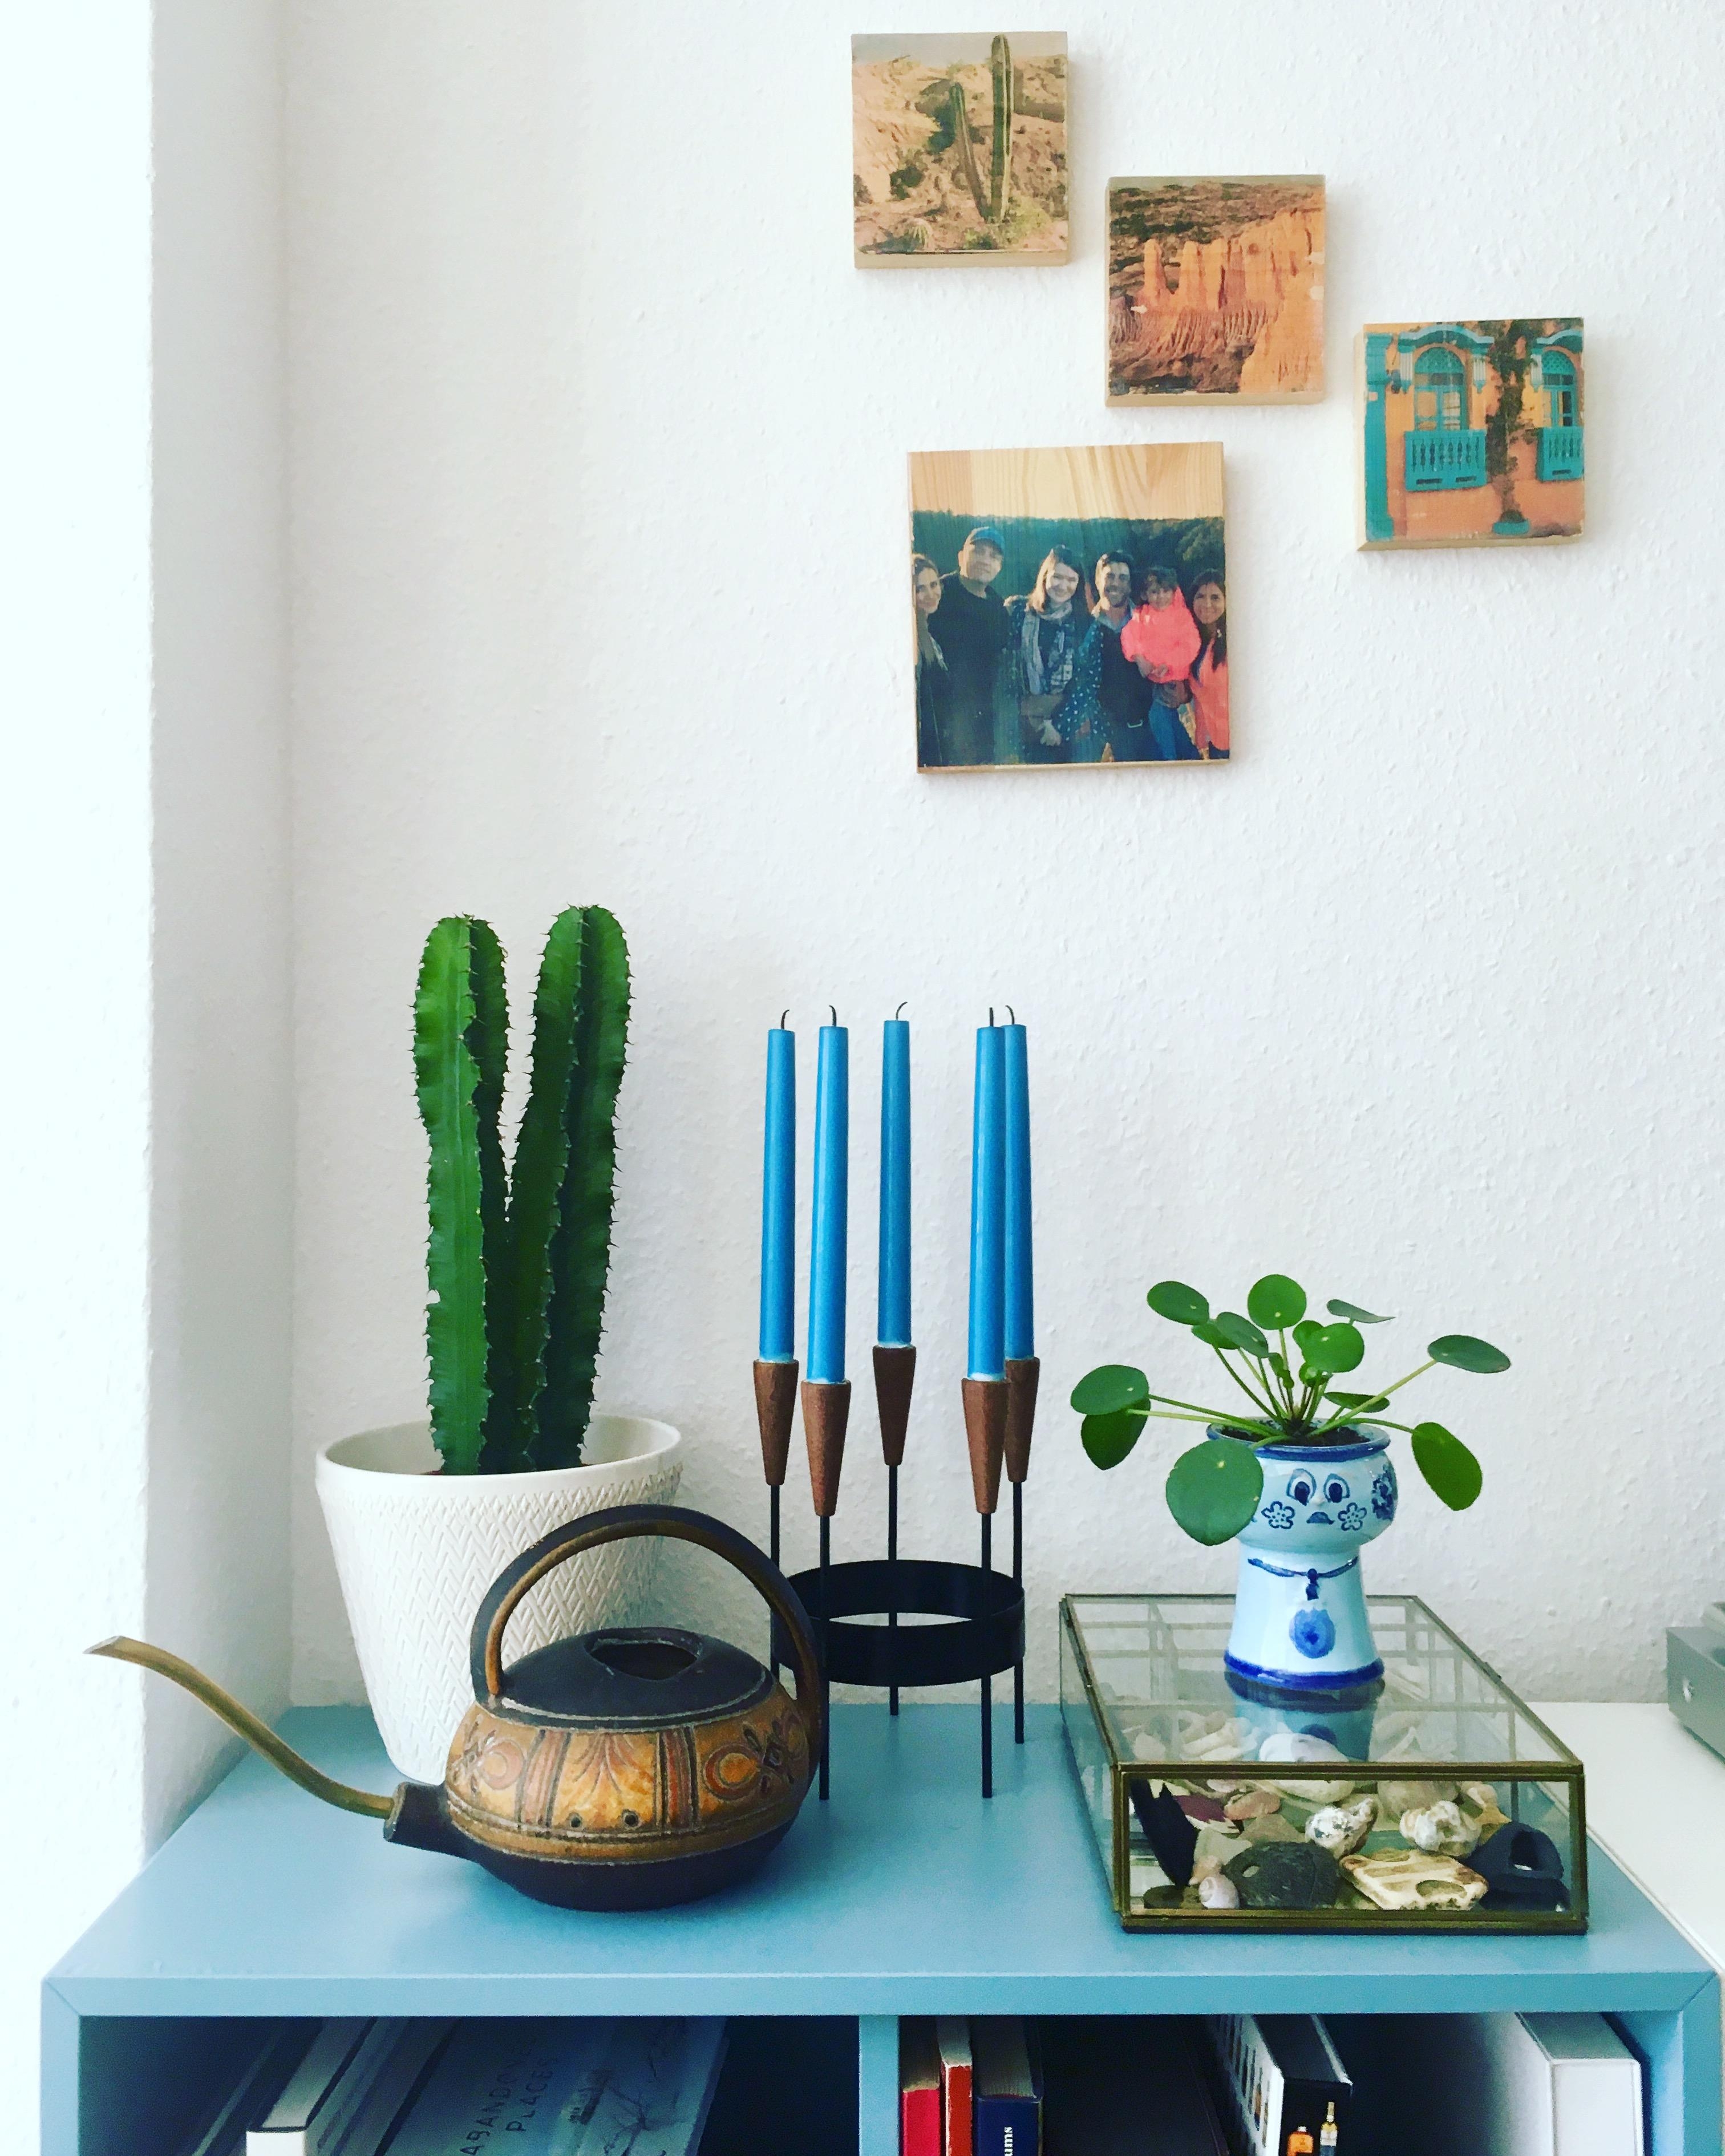 Blau, blau, blau ist meine ganze Deko...
#vintage #retro #pflanzenliebe #wohnzimmer